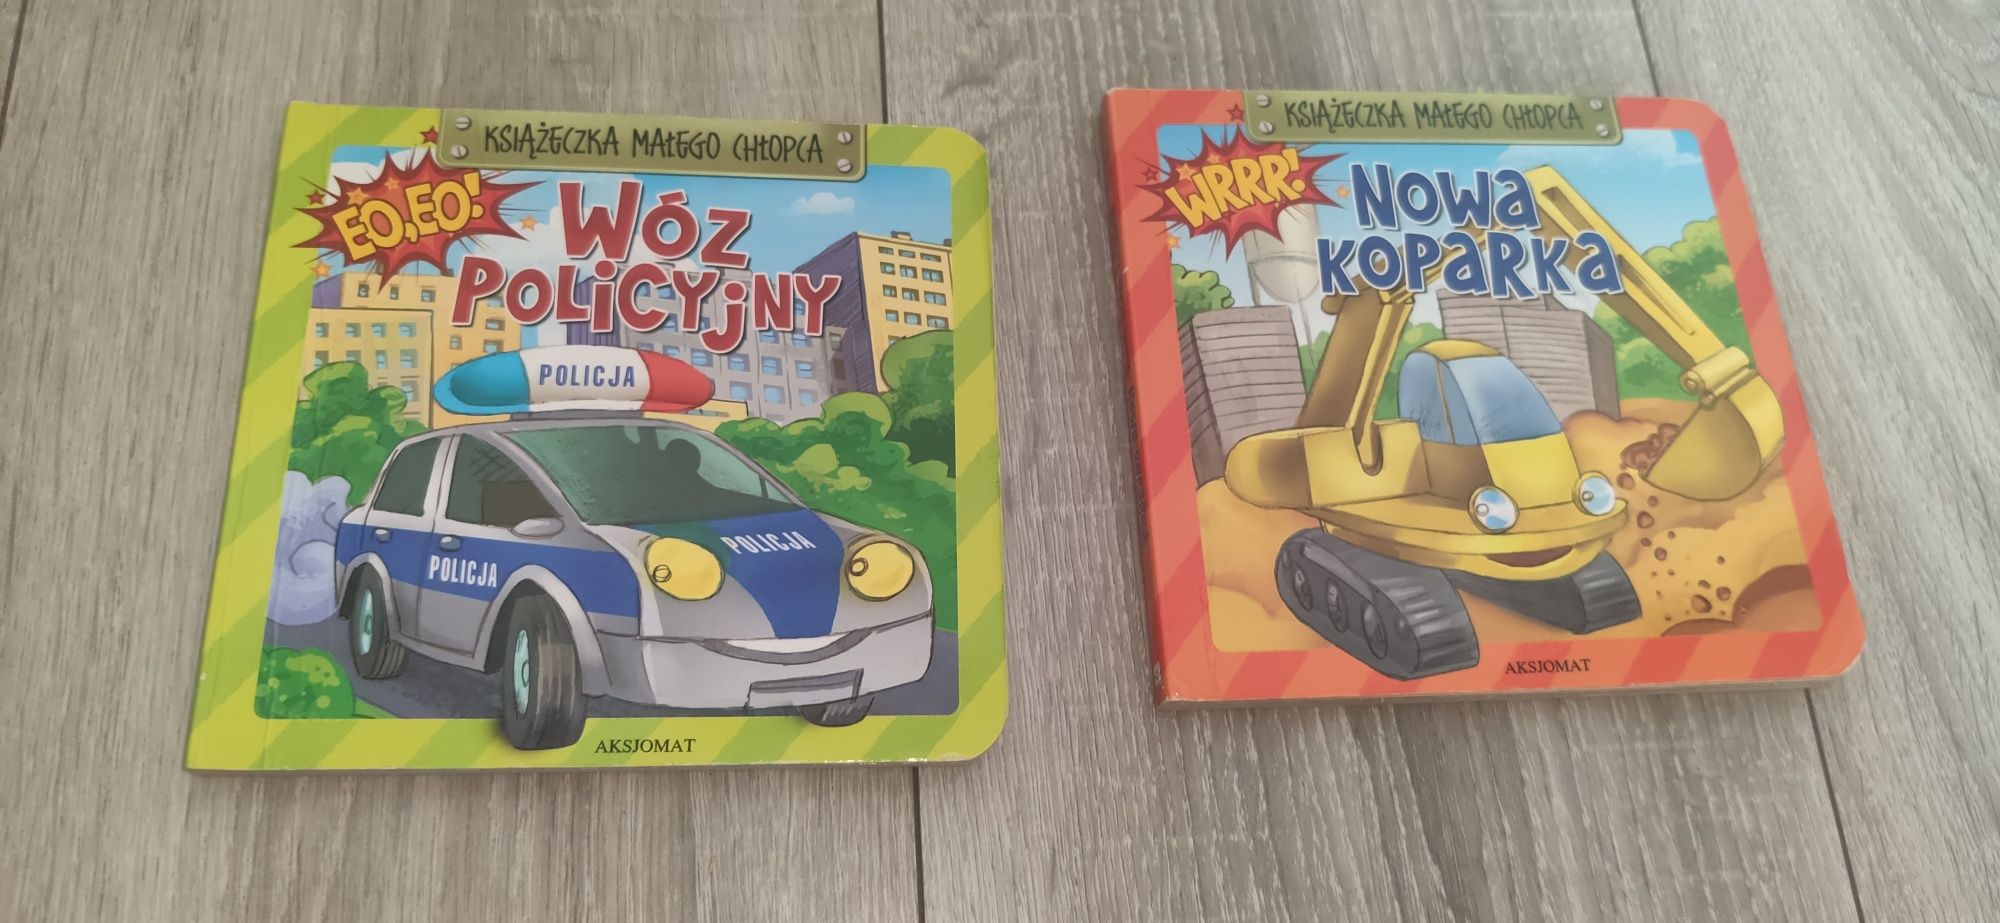 Książka małego chłopca Wóz policyjny i Nowa koparka